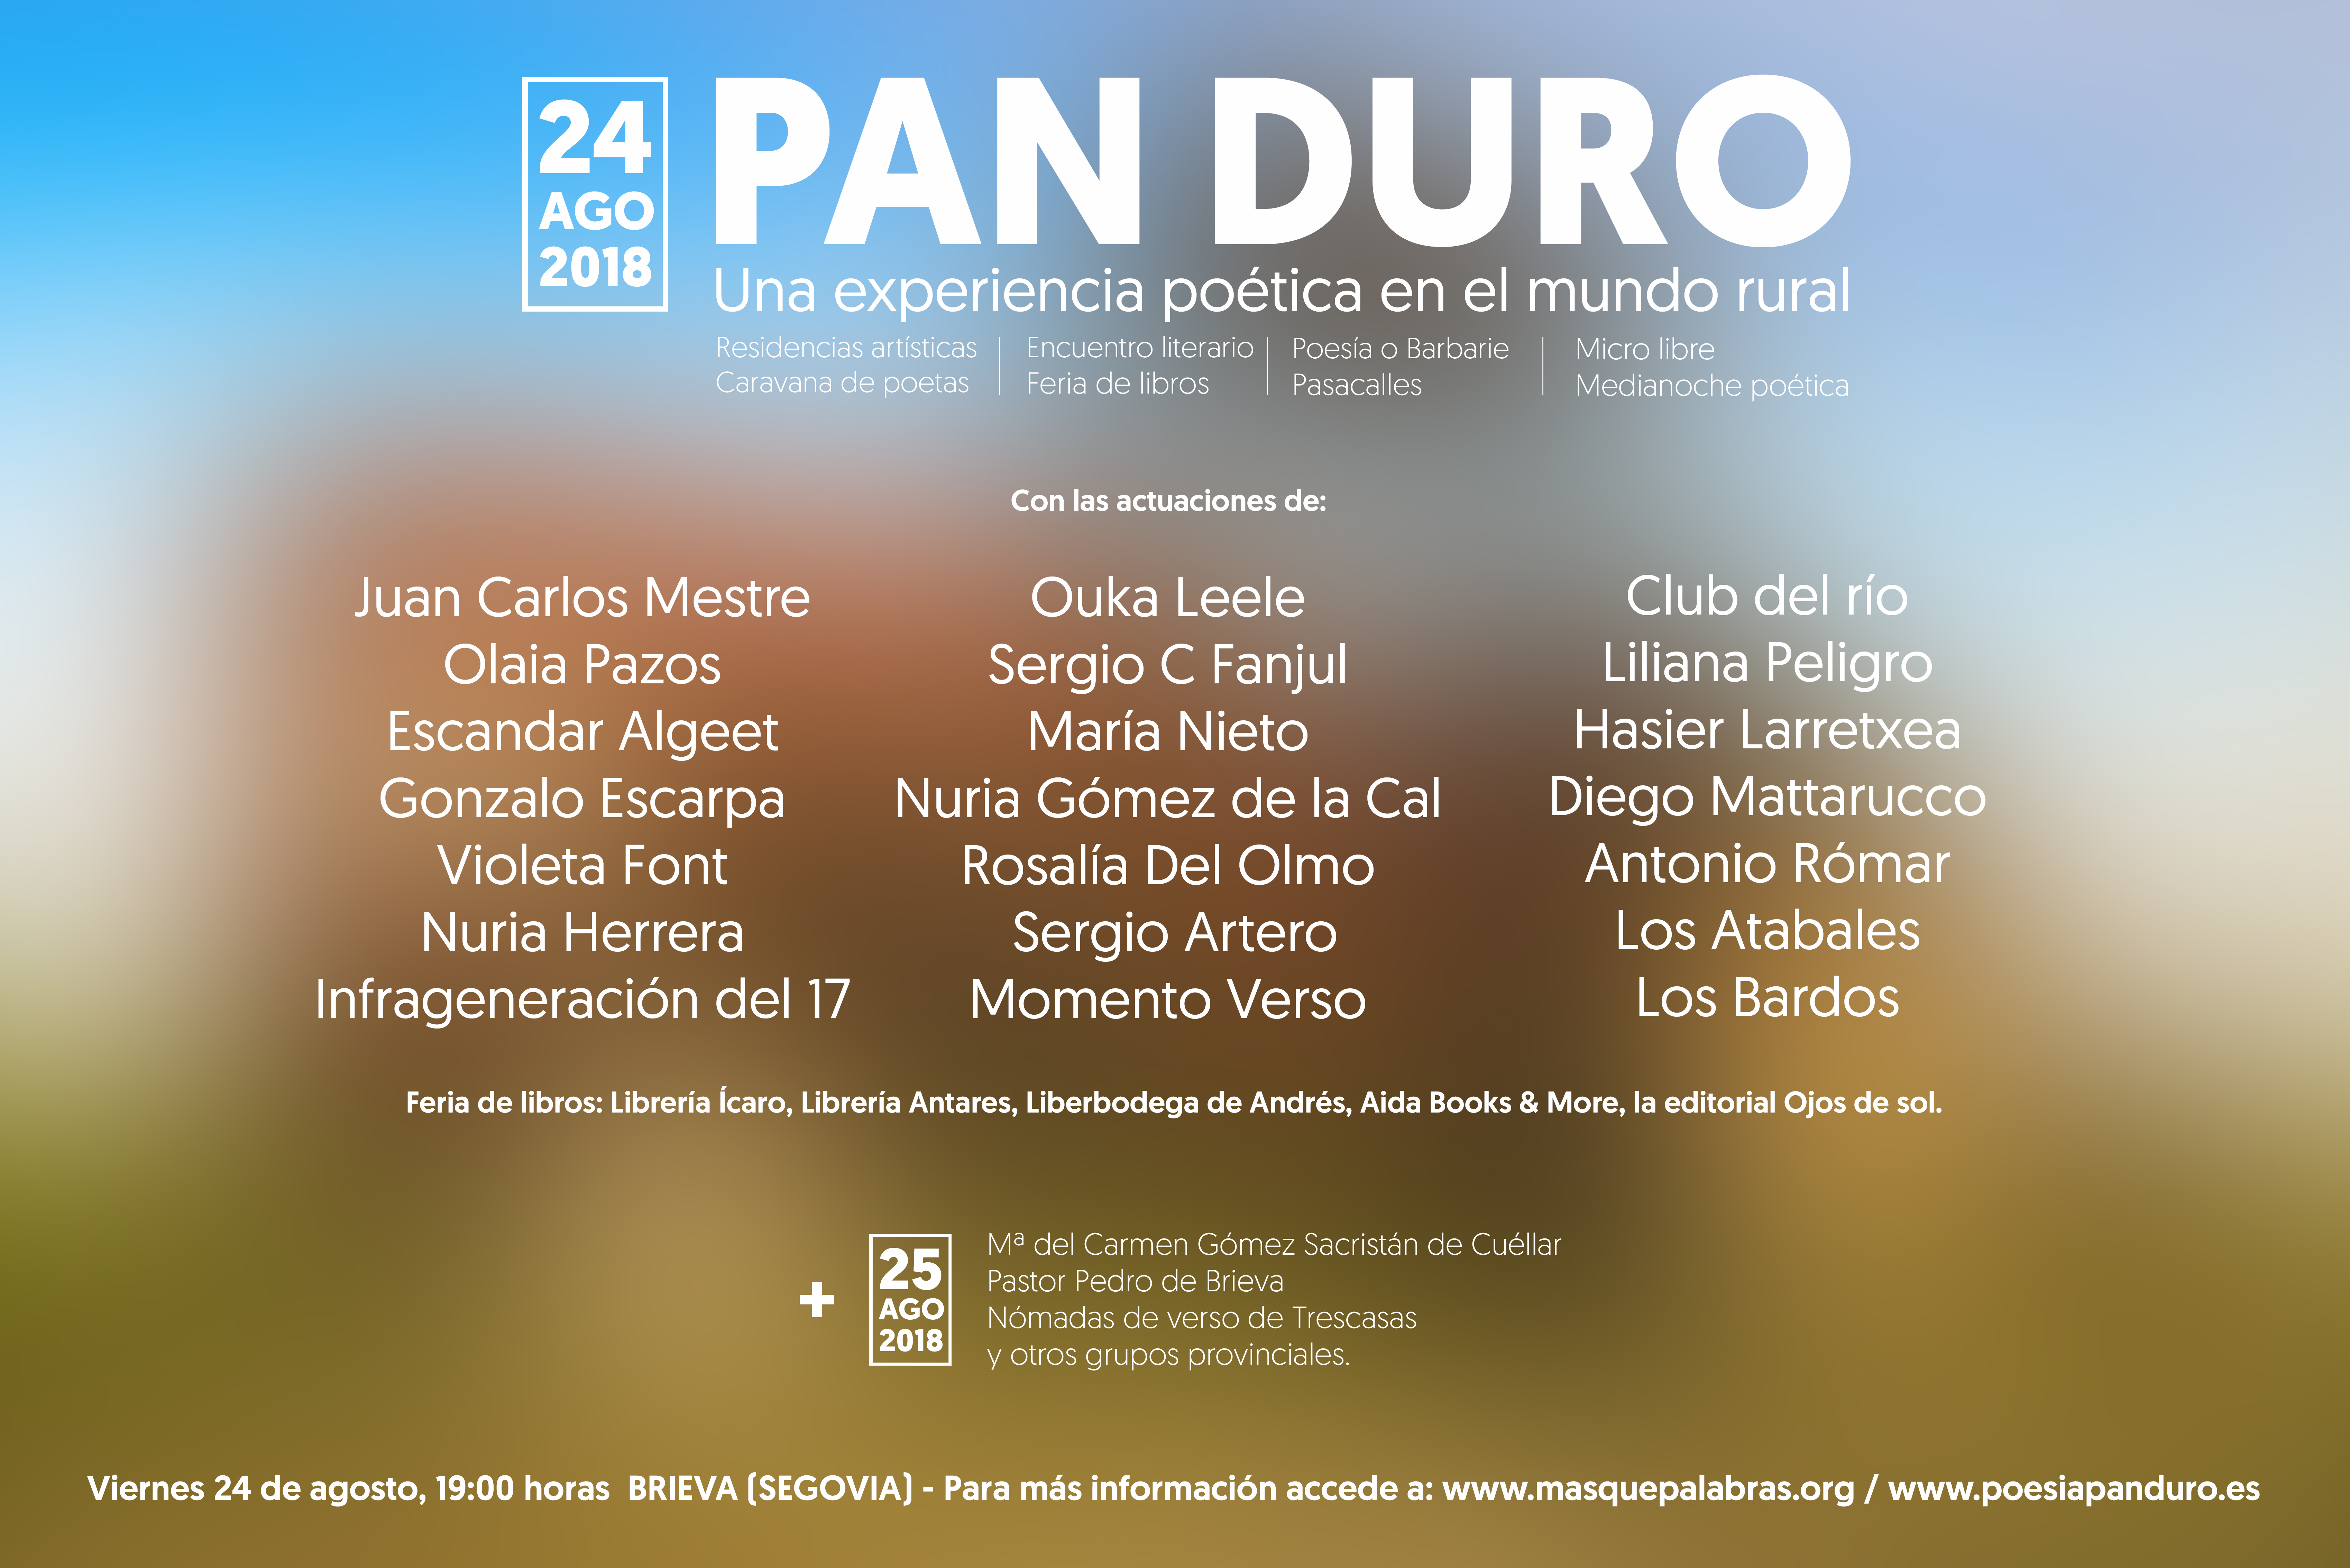 Pan Duro 2018